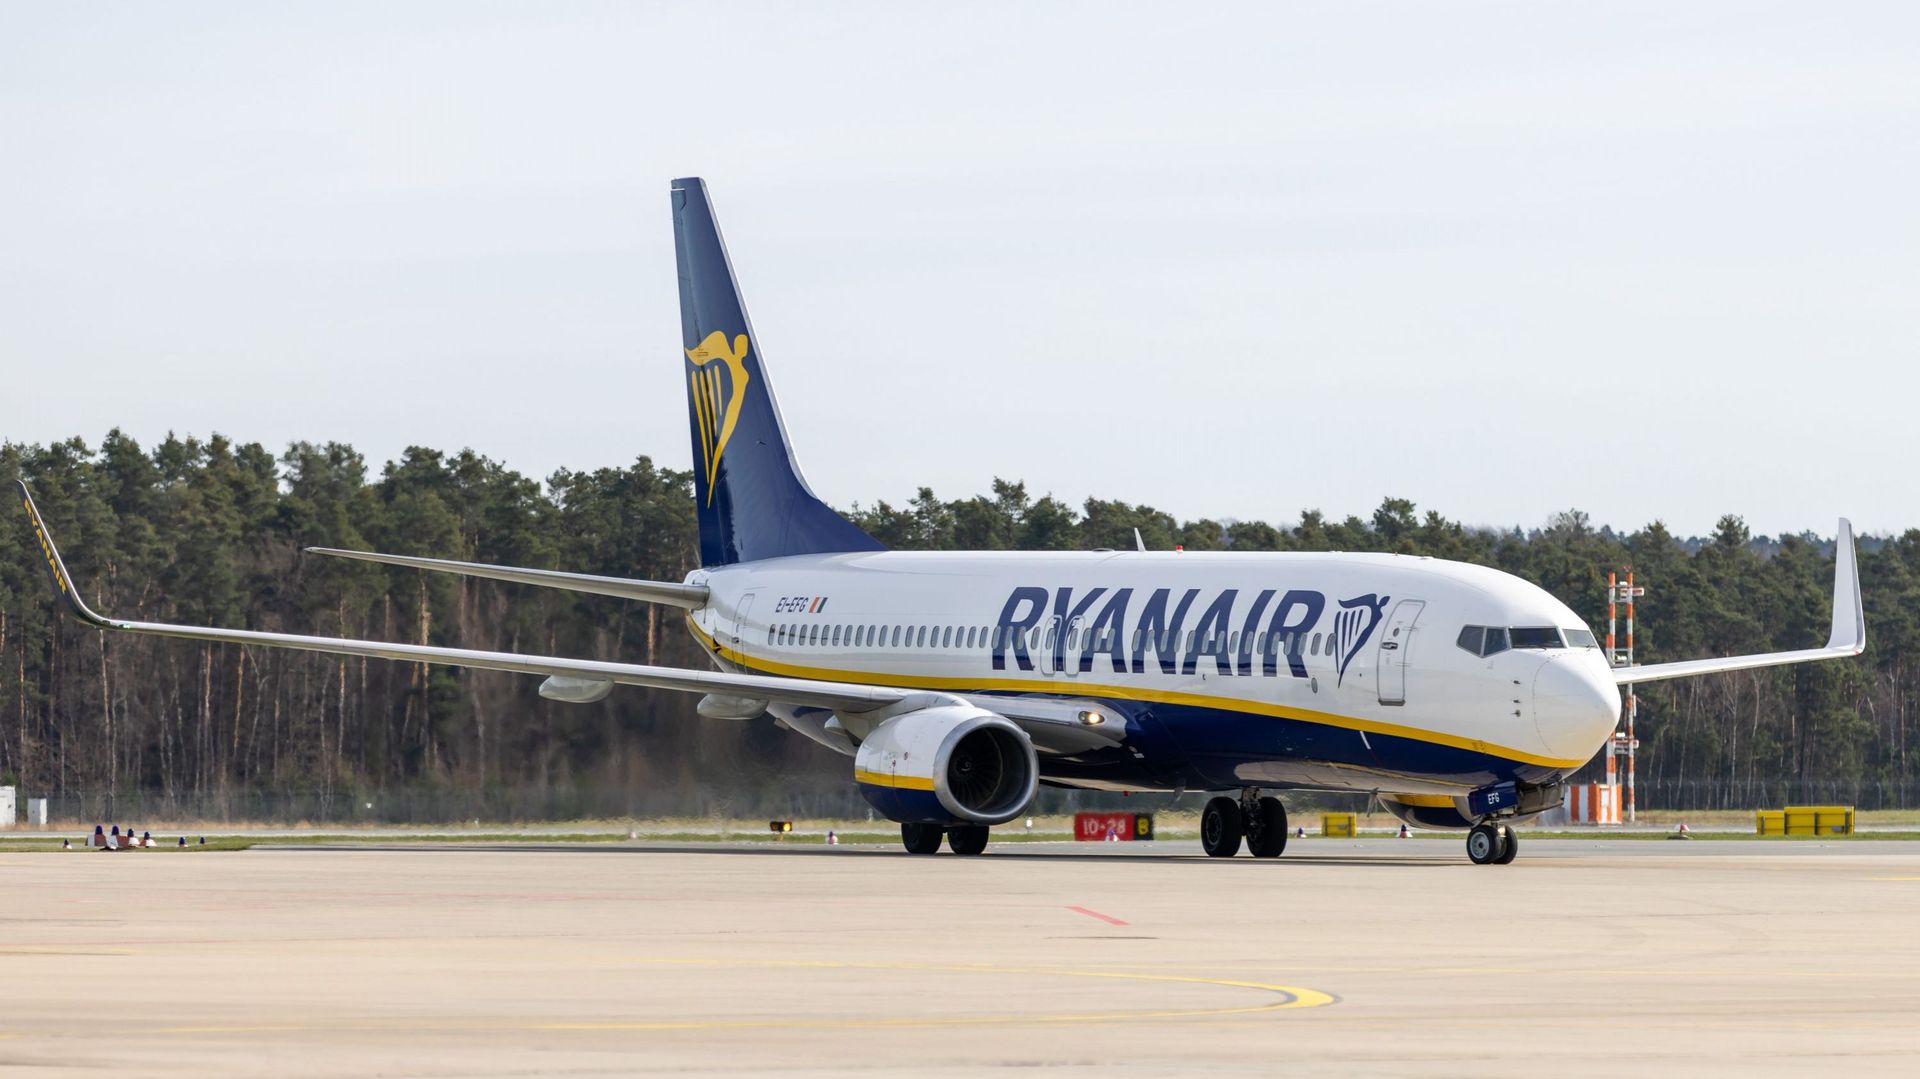 Opening of the Ryanair base in Nuremberg